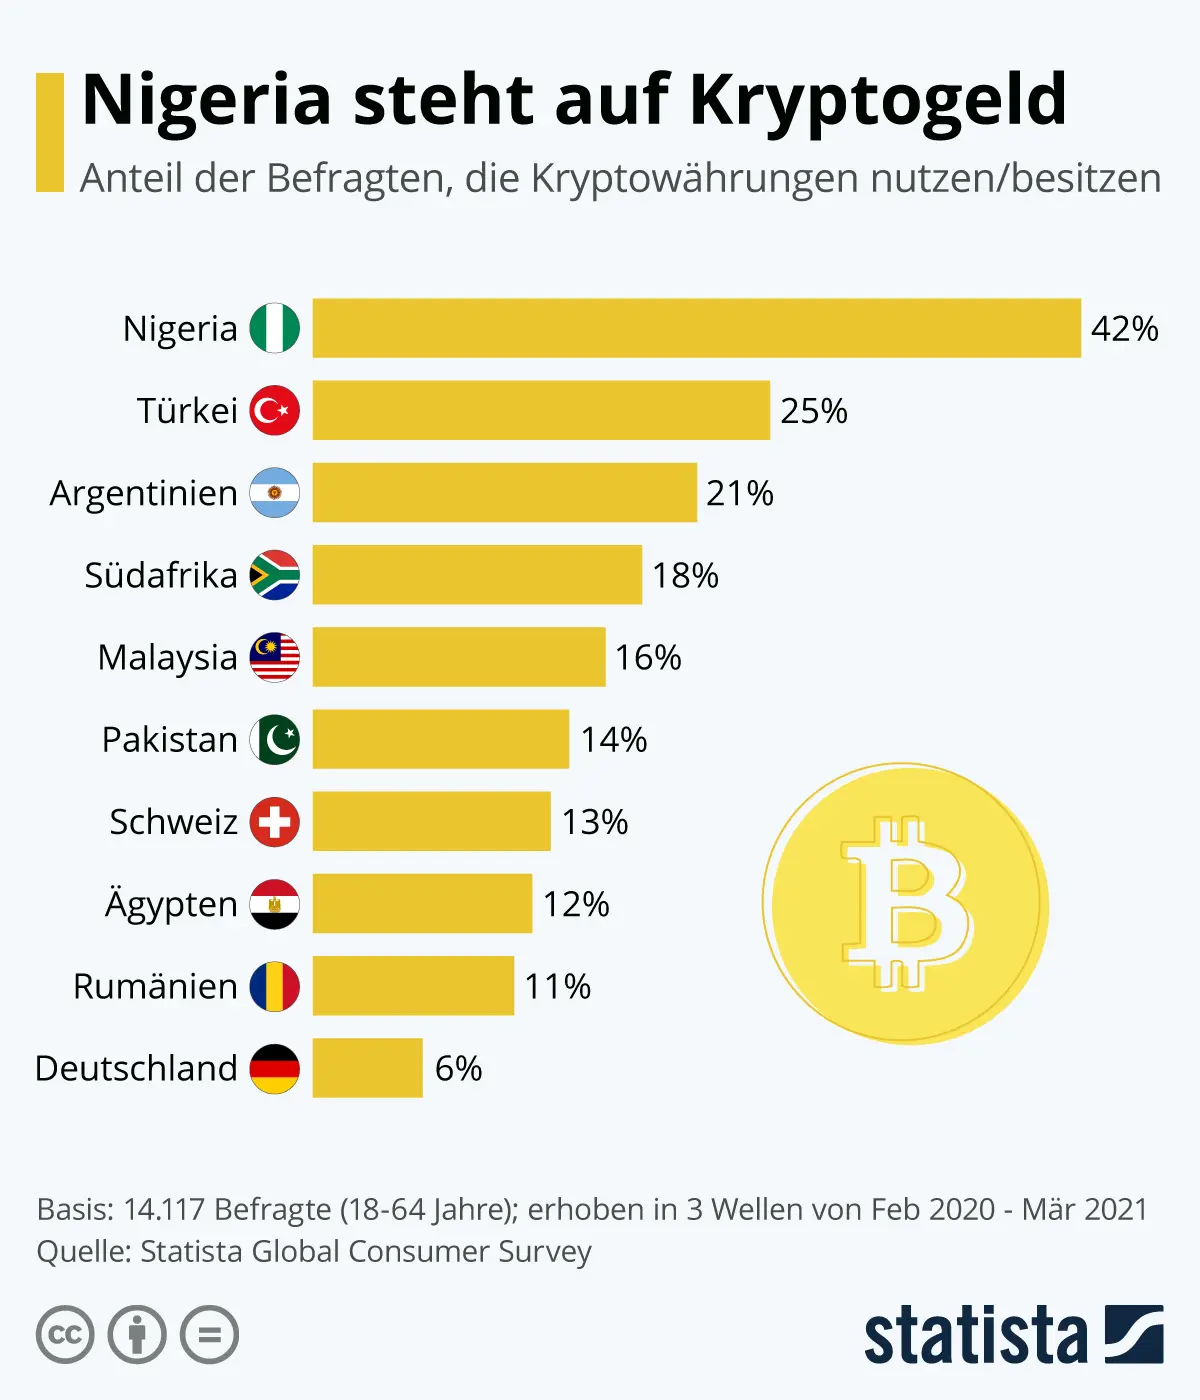 investitionen in krypto nach ländern soll ich langfristig in bitcoin investieren?